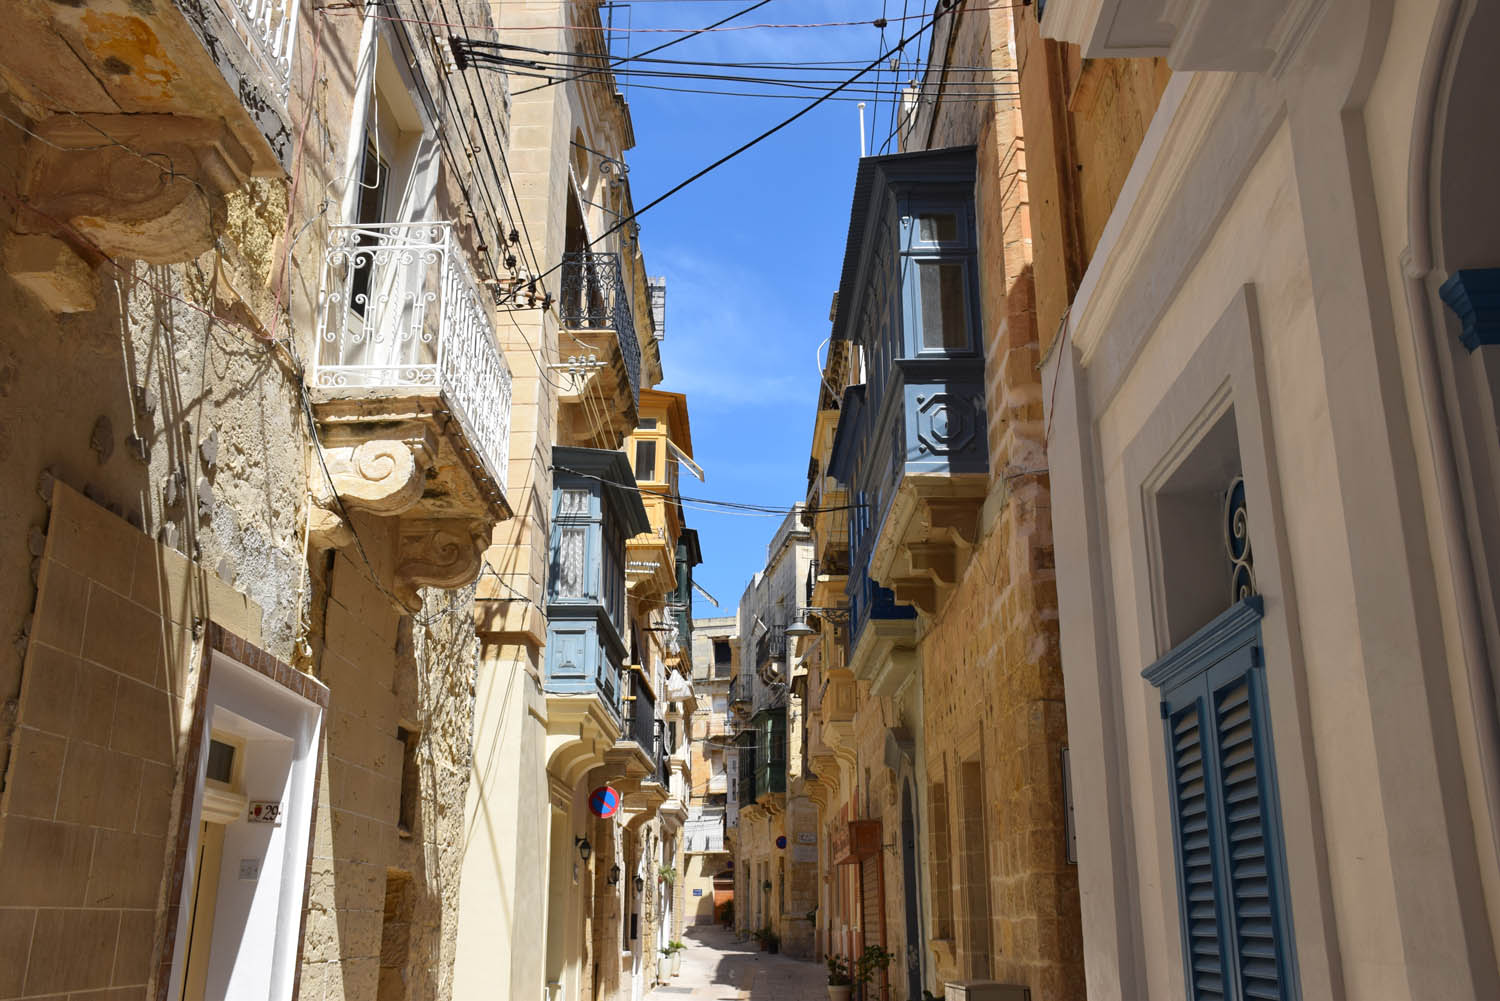 Pelas ruelas estreitas de Vittoriosa, Malta